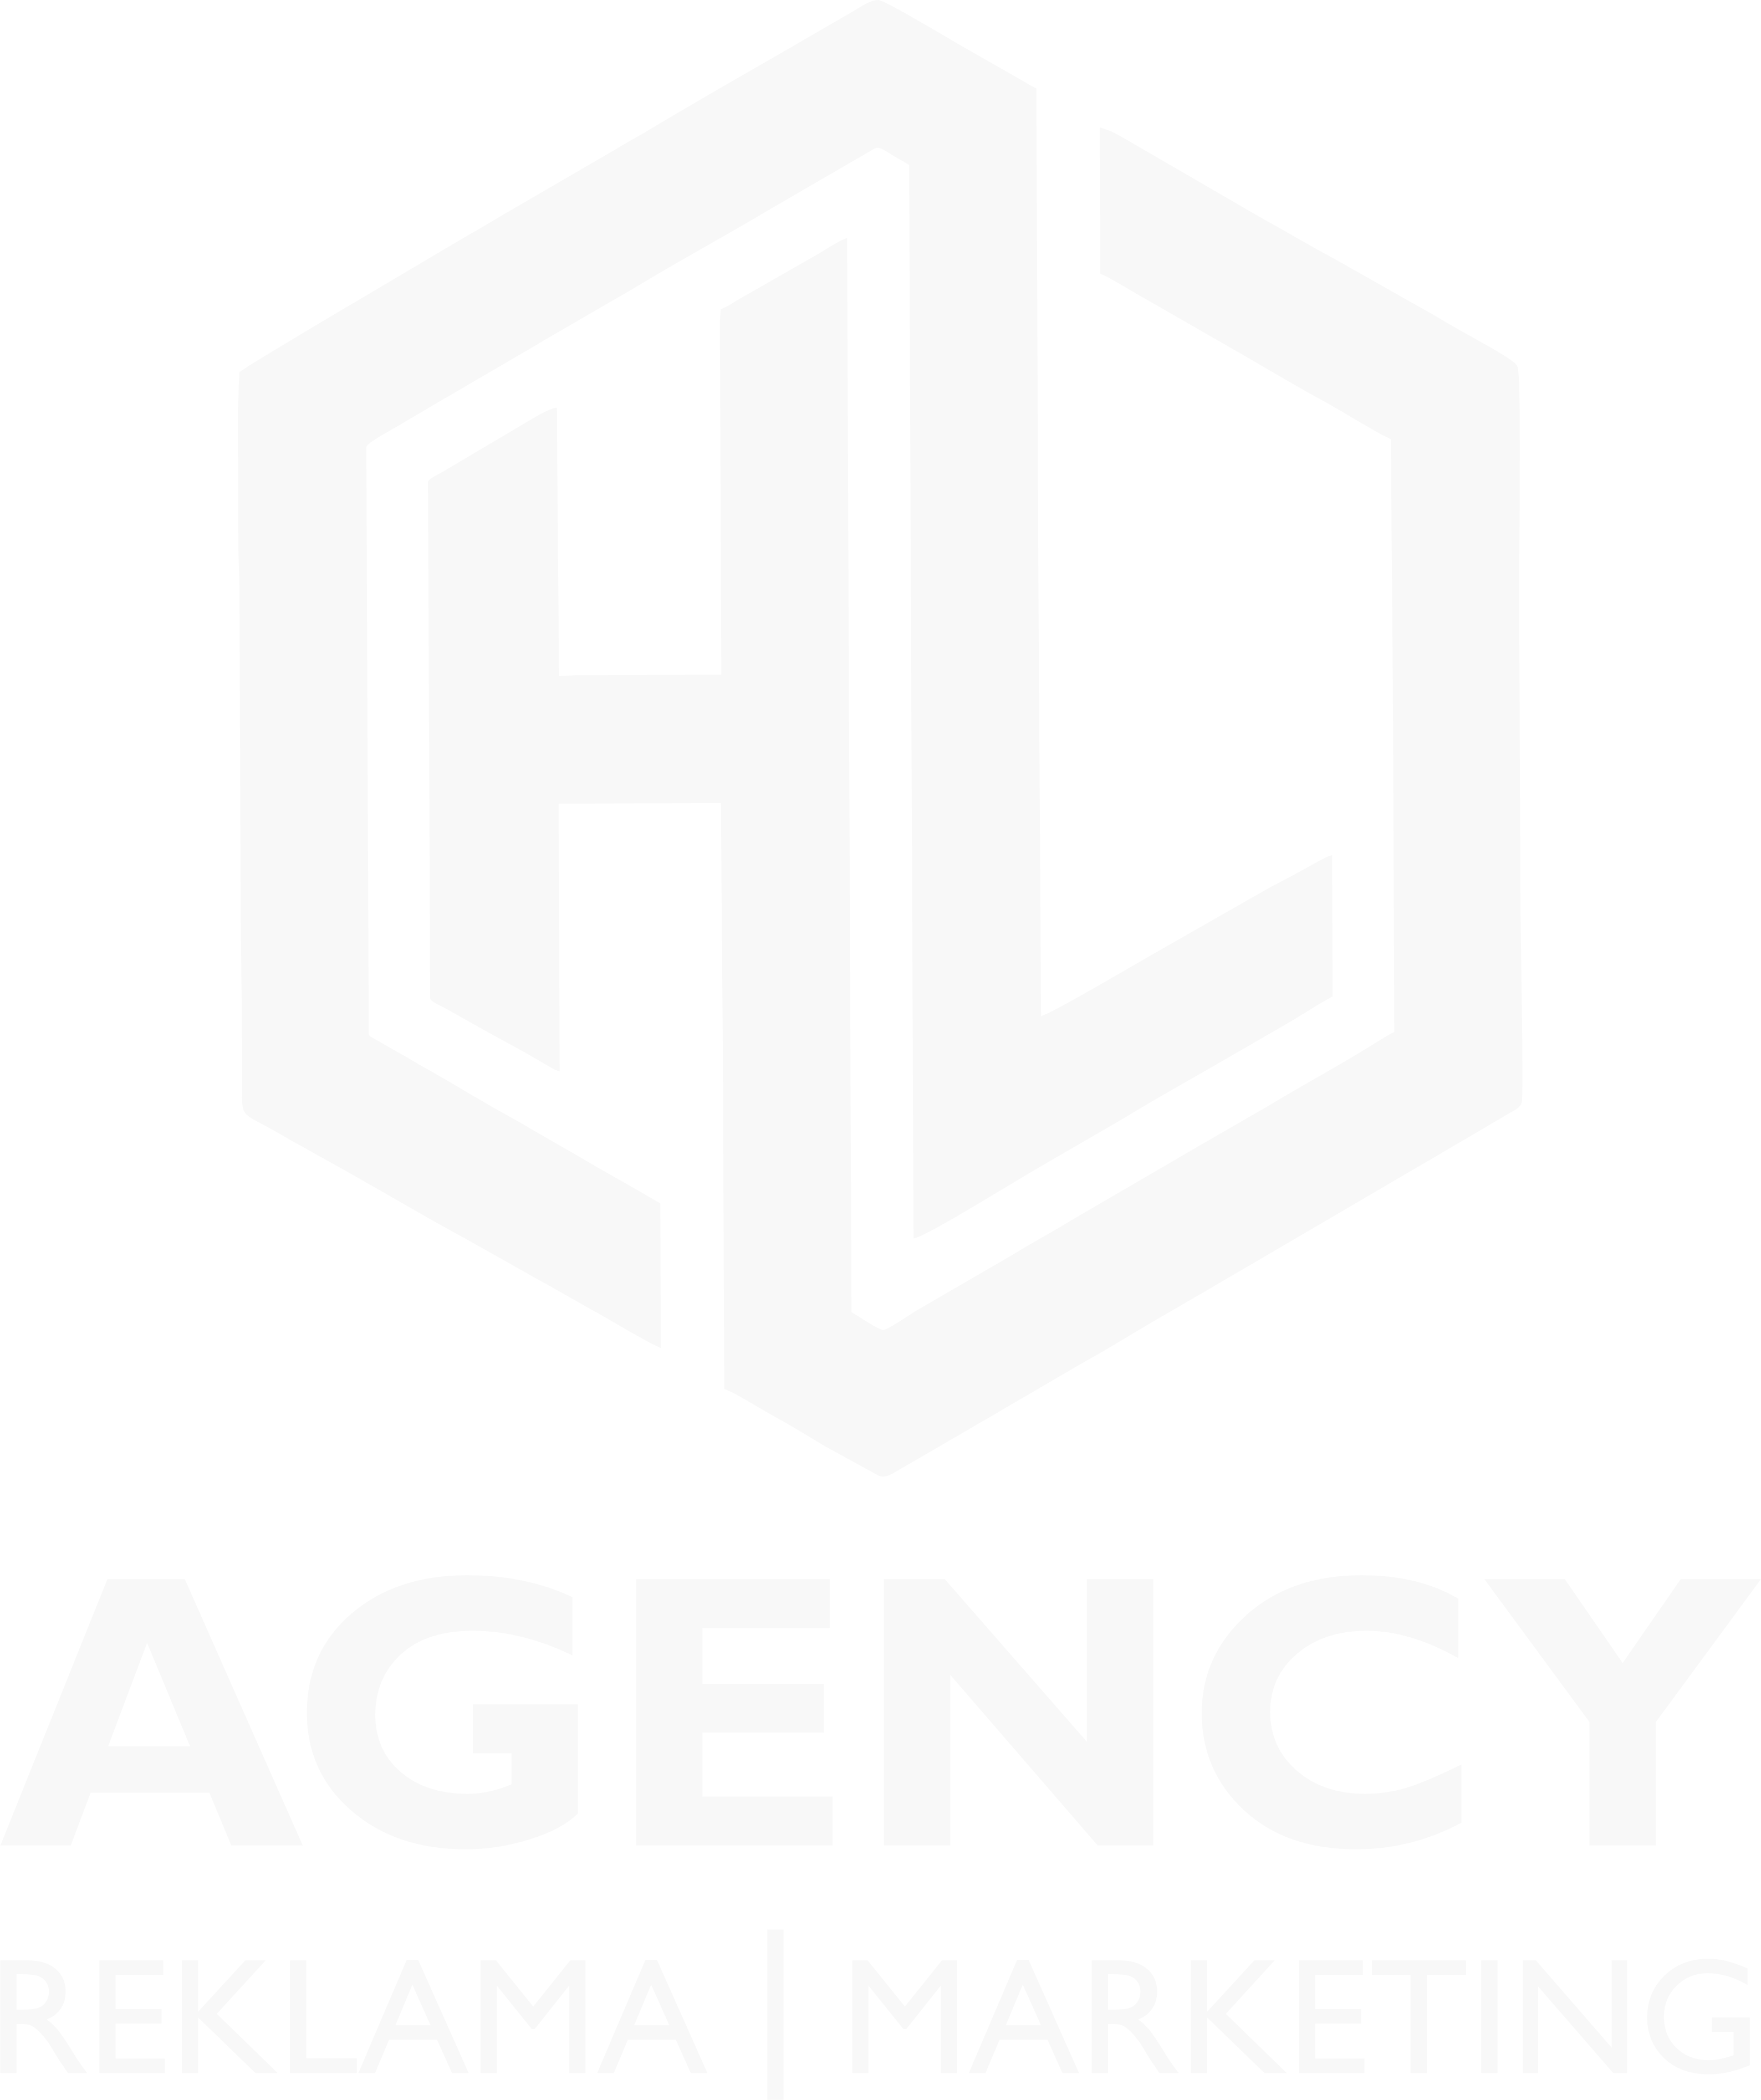 nové_logo_HL_biele